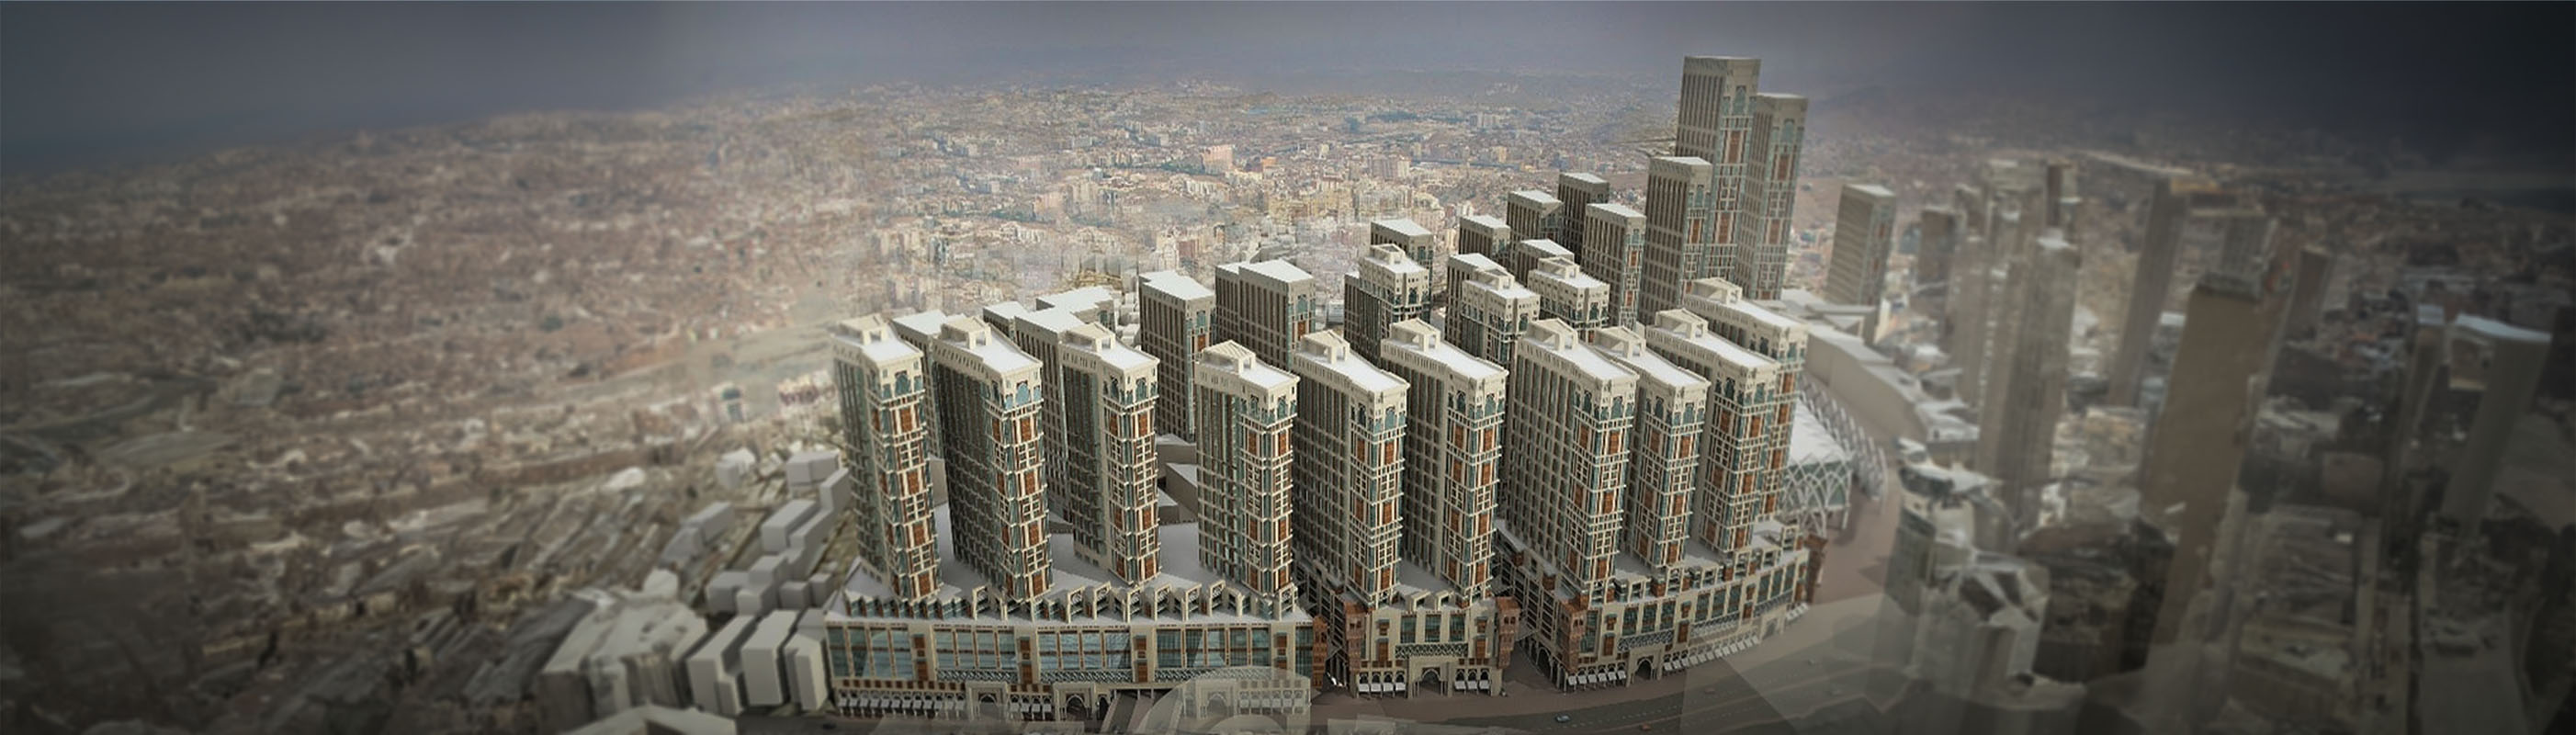 Jabal Omar Towers